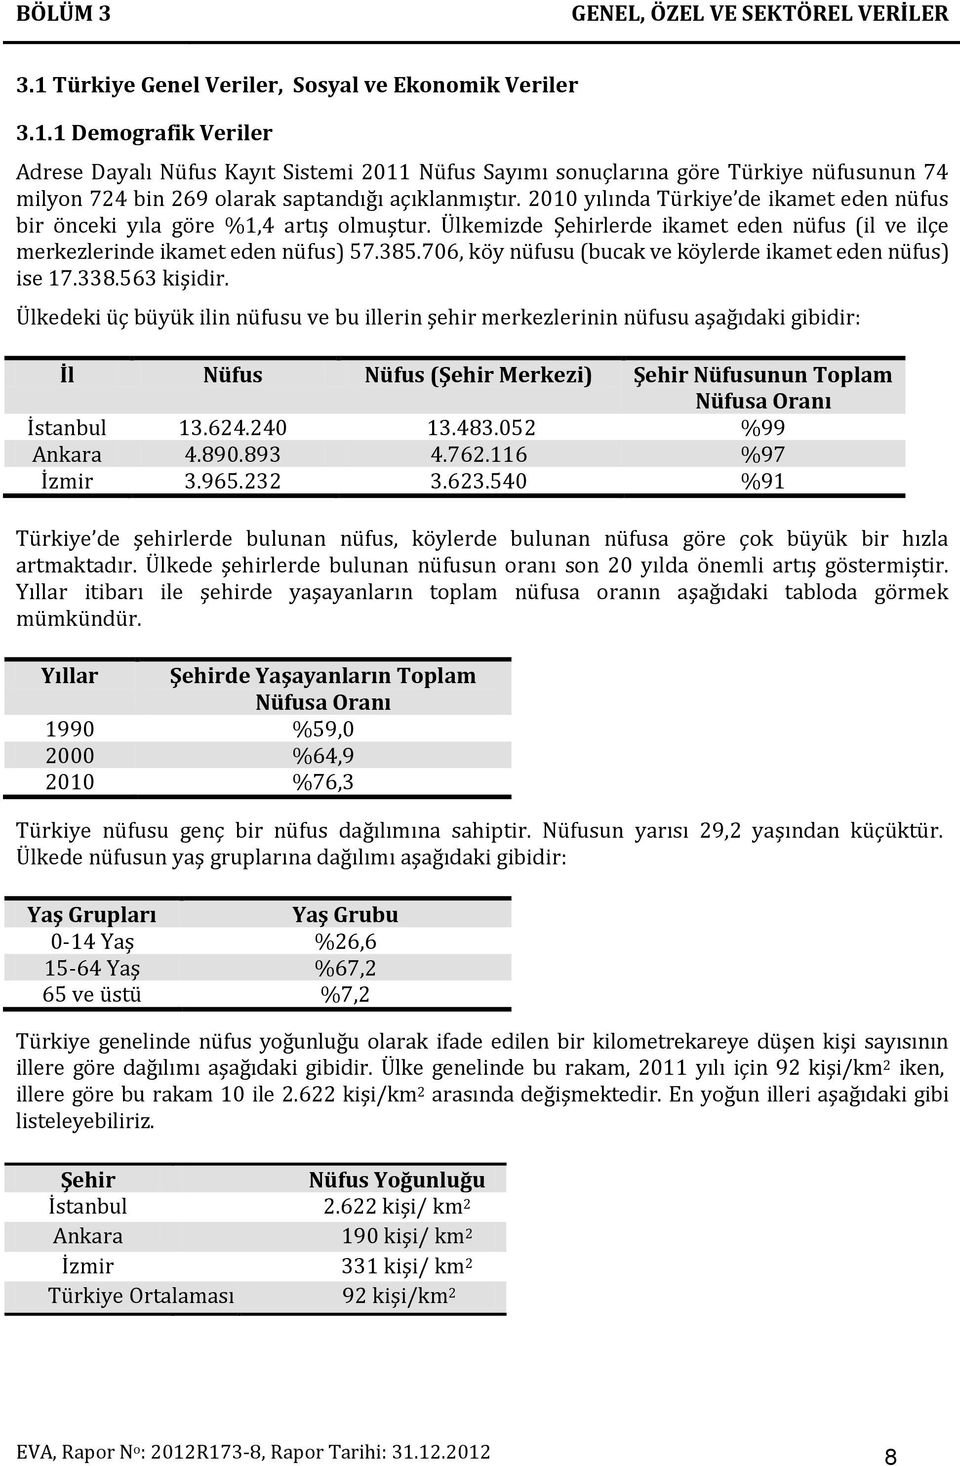 1 Demografik Veriler Adrese Dayalı Nüfus Kayıt Sistemi 2011 Nüfus Sayımı sonuçlarına göre Türkiye nüfusunun 74 milyon 724 bin 269 olarak saptandığı açıklanmıştır.